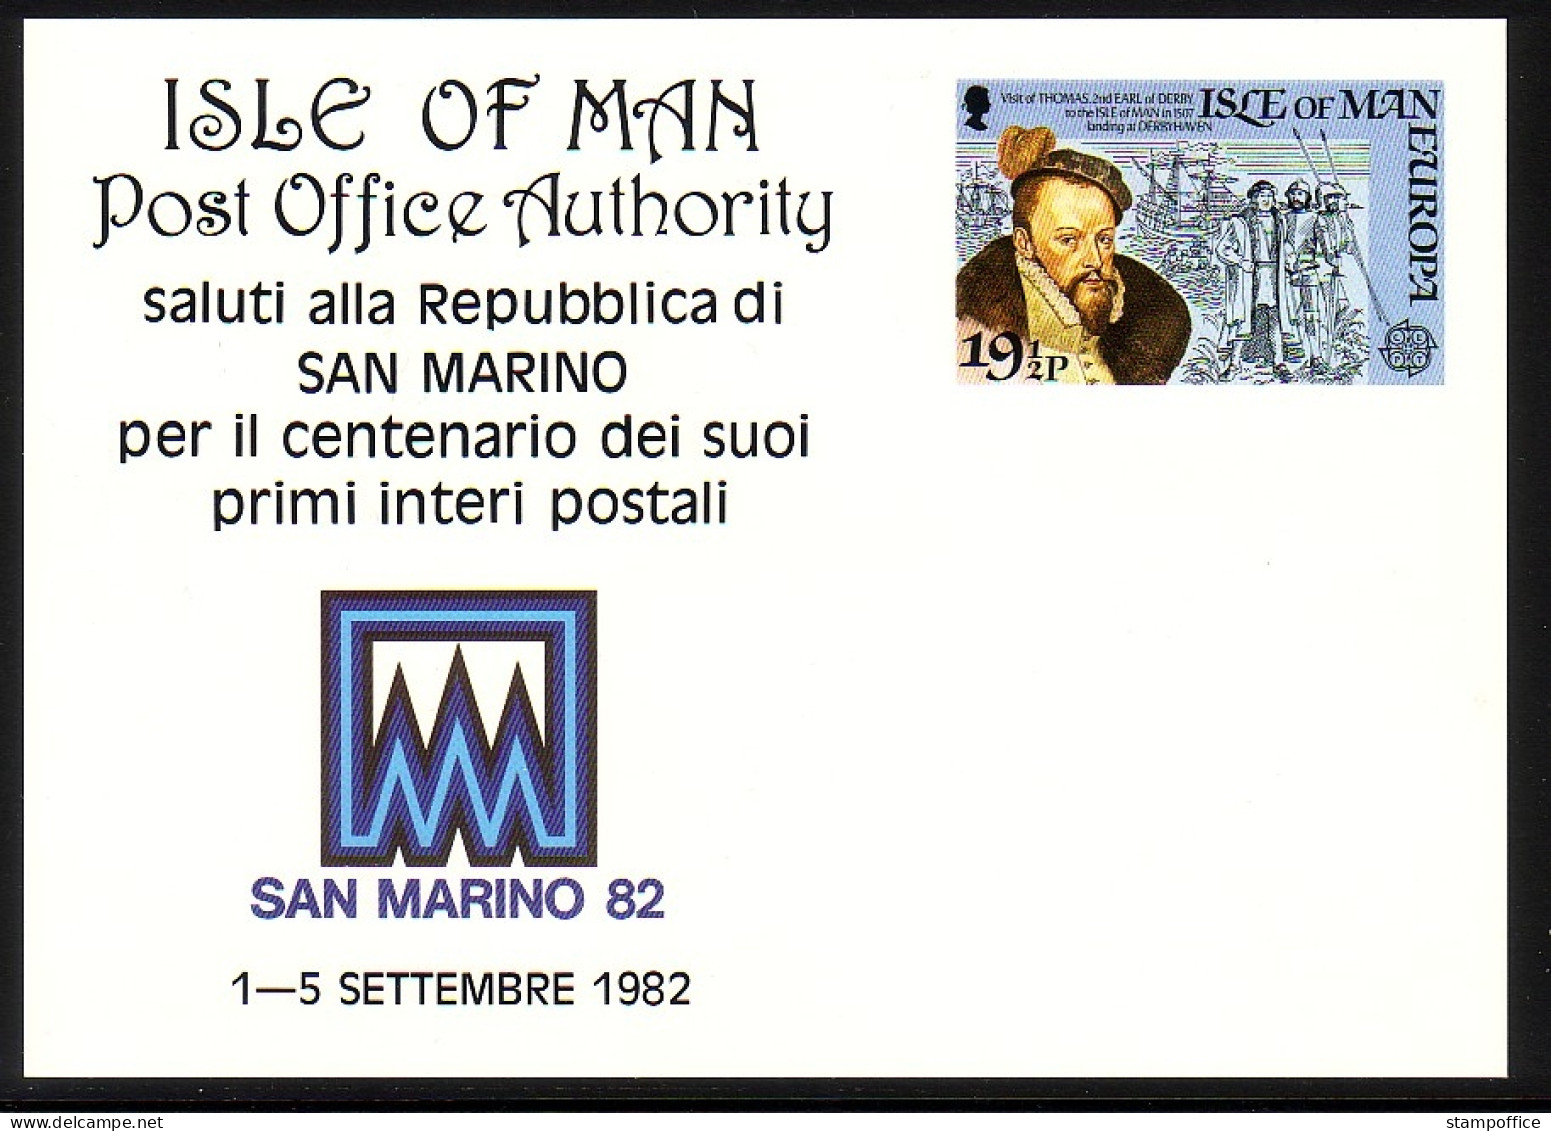 ISLE OF MAN SONDERPOSTKARTE P 1 MIT MI-NR. 214 POSTFRISCH(MINT) SAN MARINO 82 EUROPA 1982 - 1982